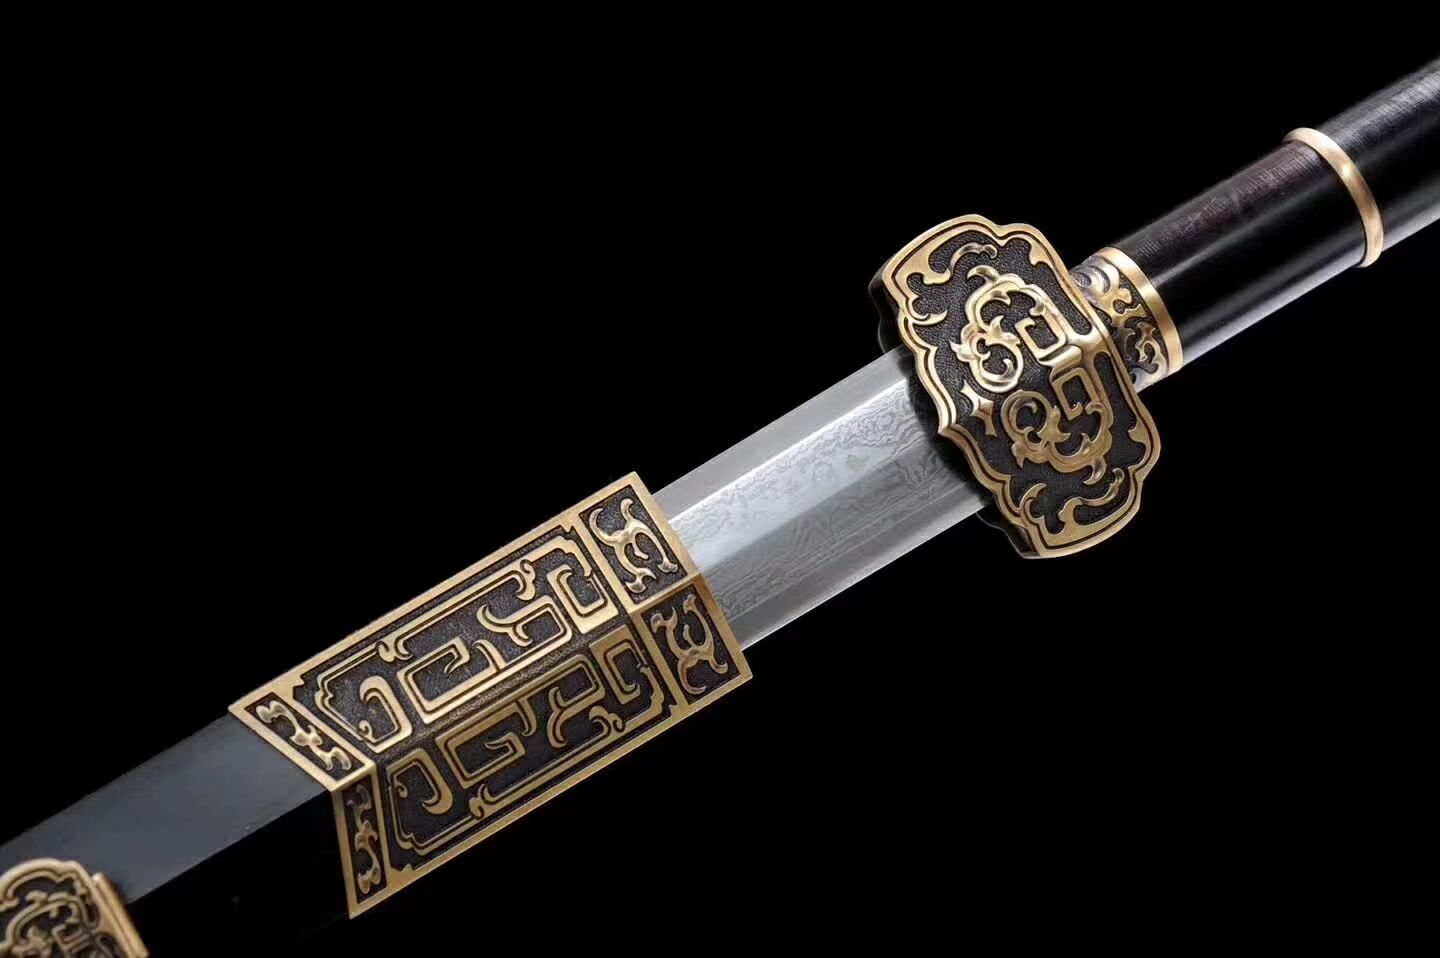 龙泉宝剑,龙泉刀剑,花纹钢宝剑专卖图片